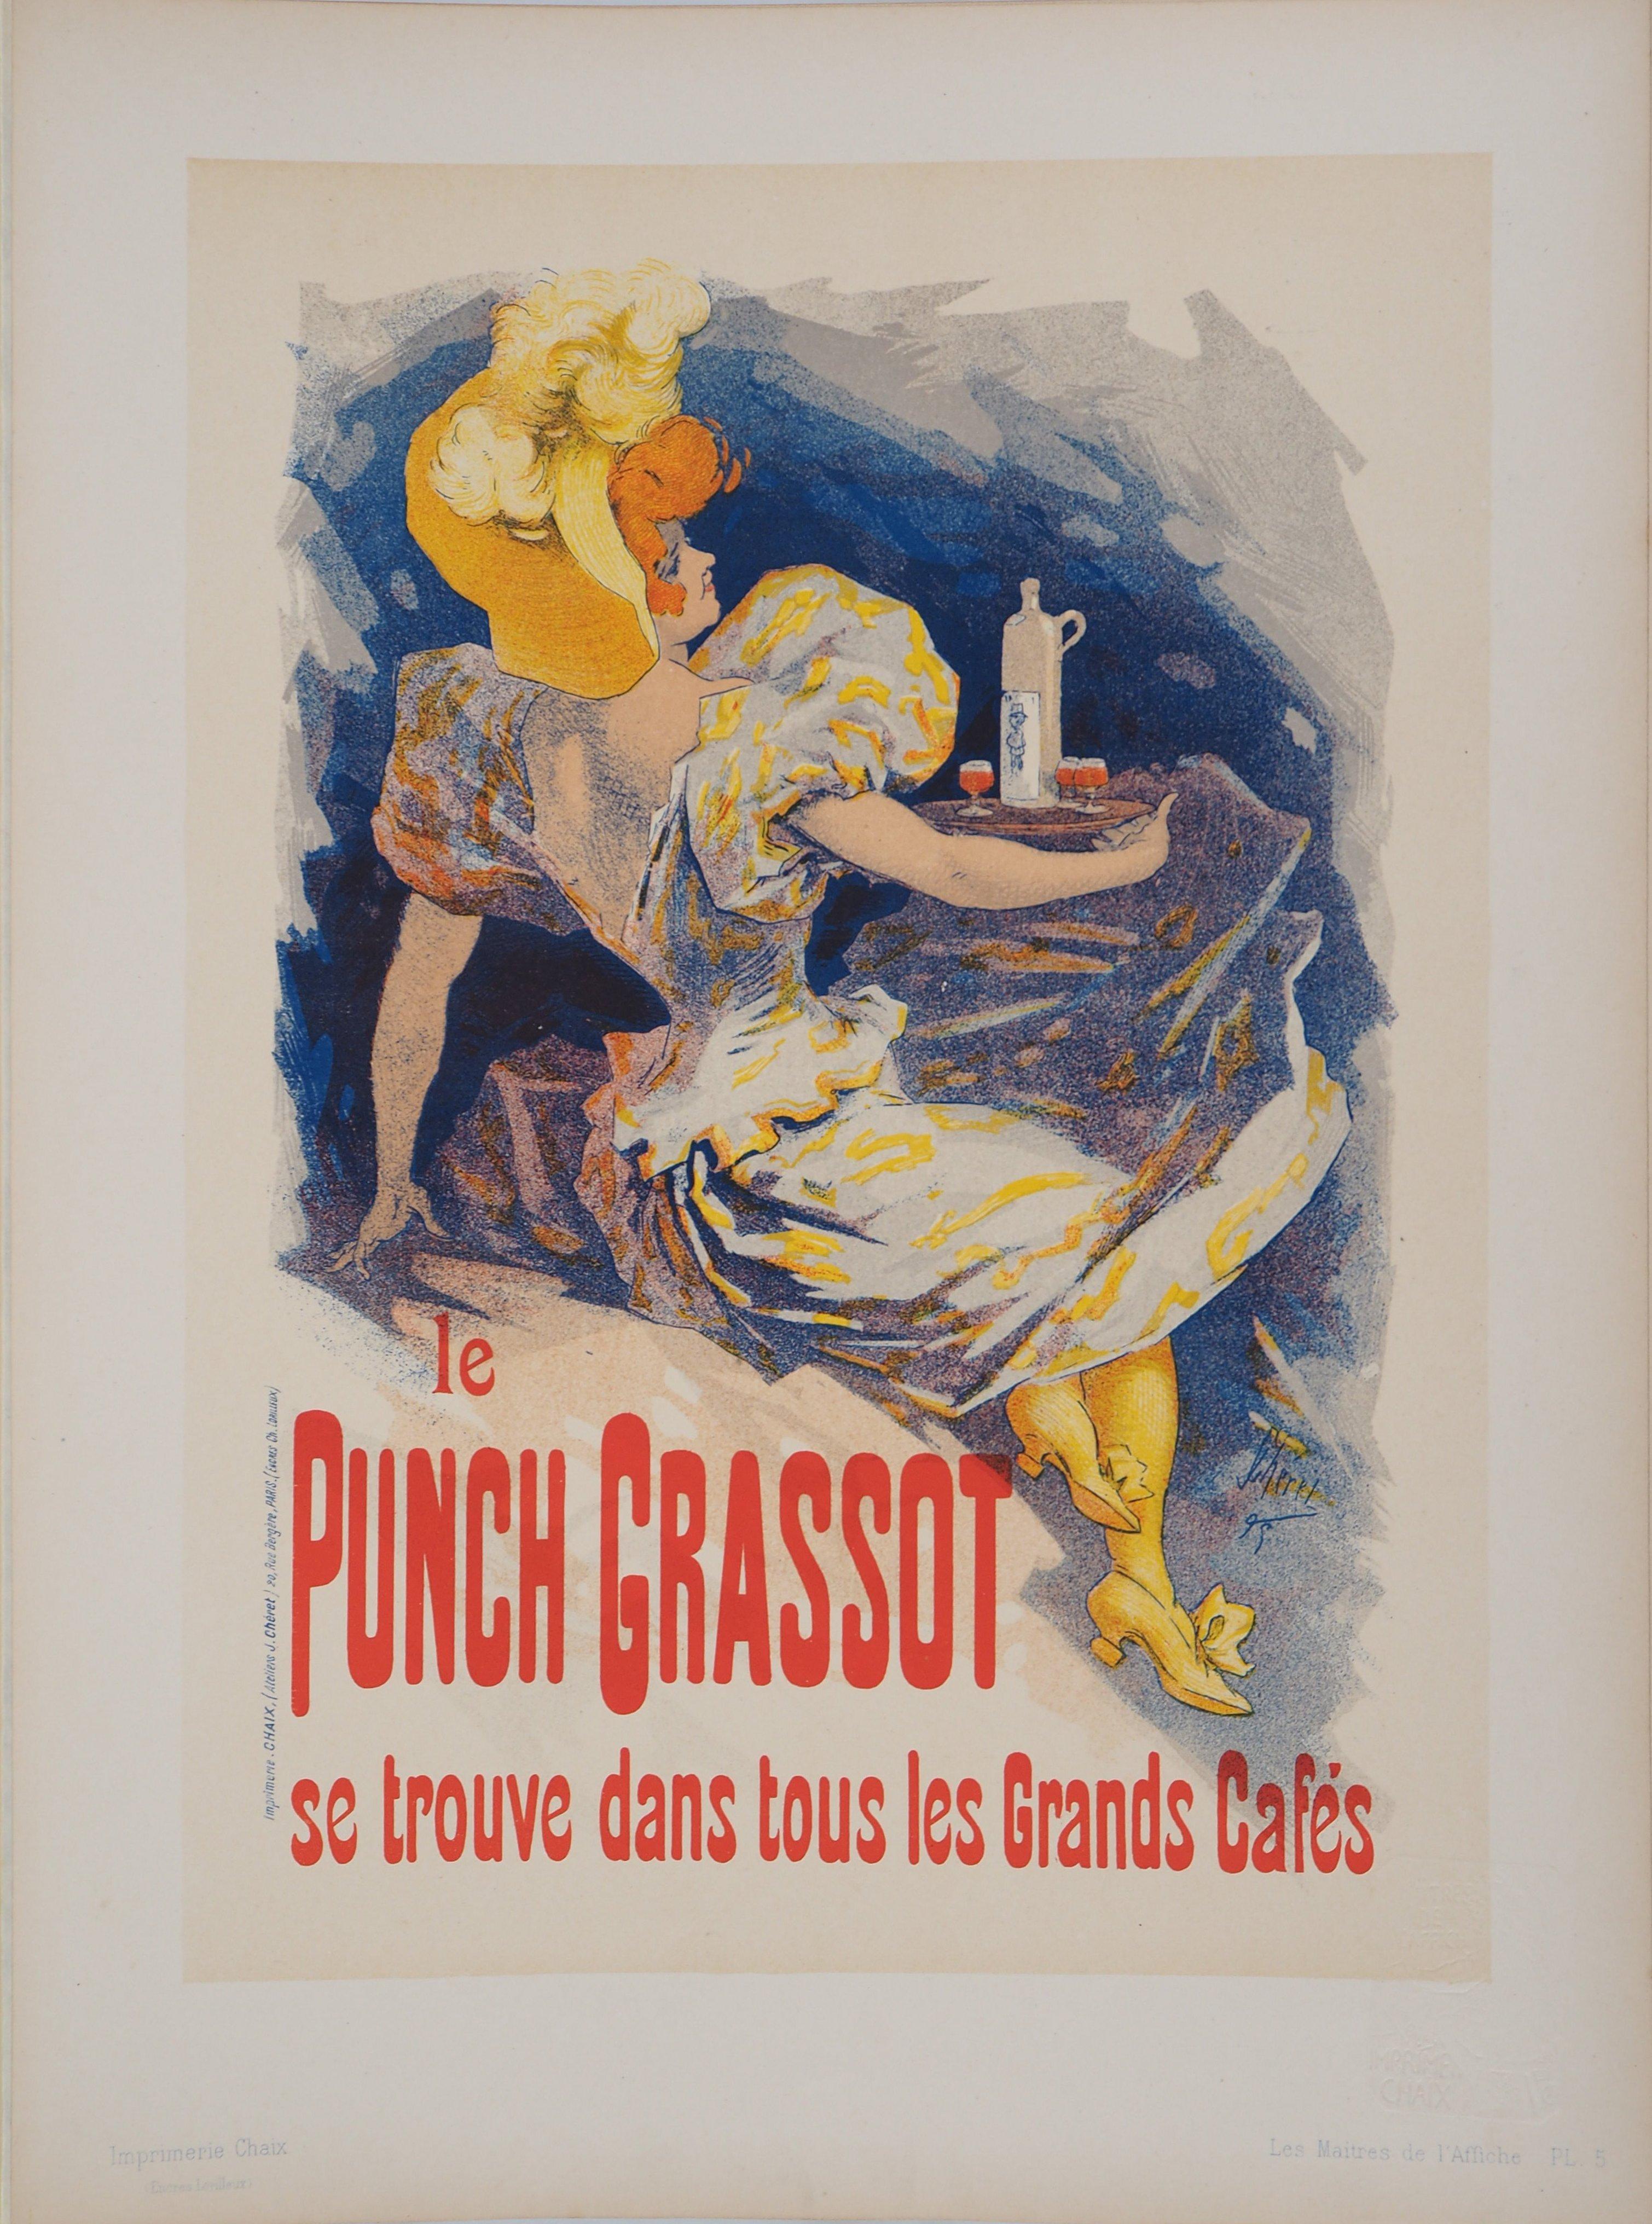 Punch Grassot - Lithograph (Les Maîtres de l'Affiche), 1895 - Print by Jules Chéret